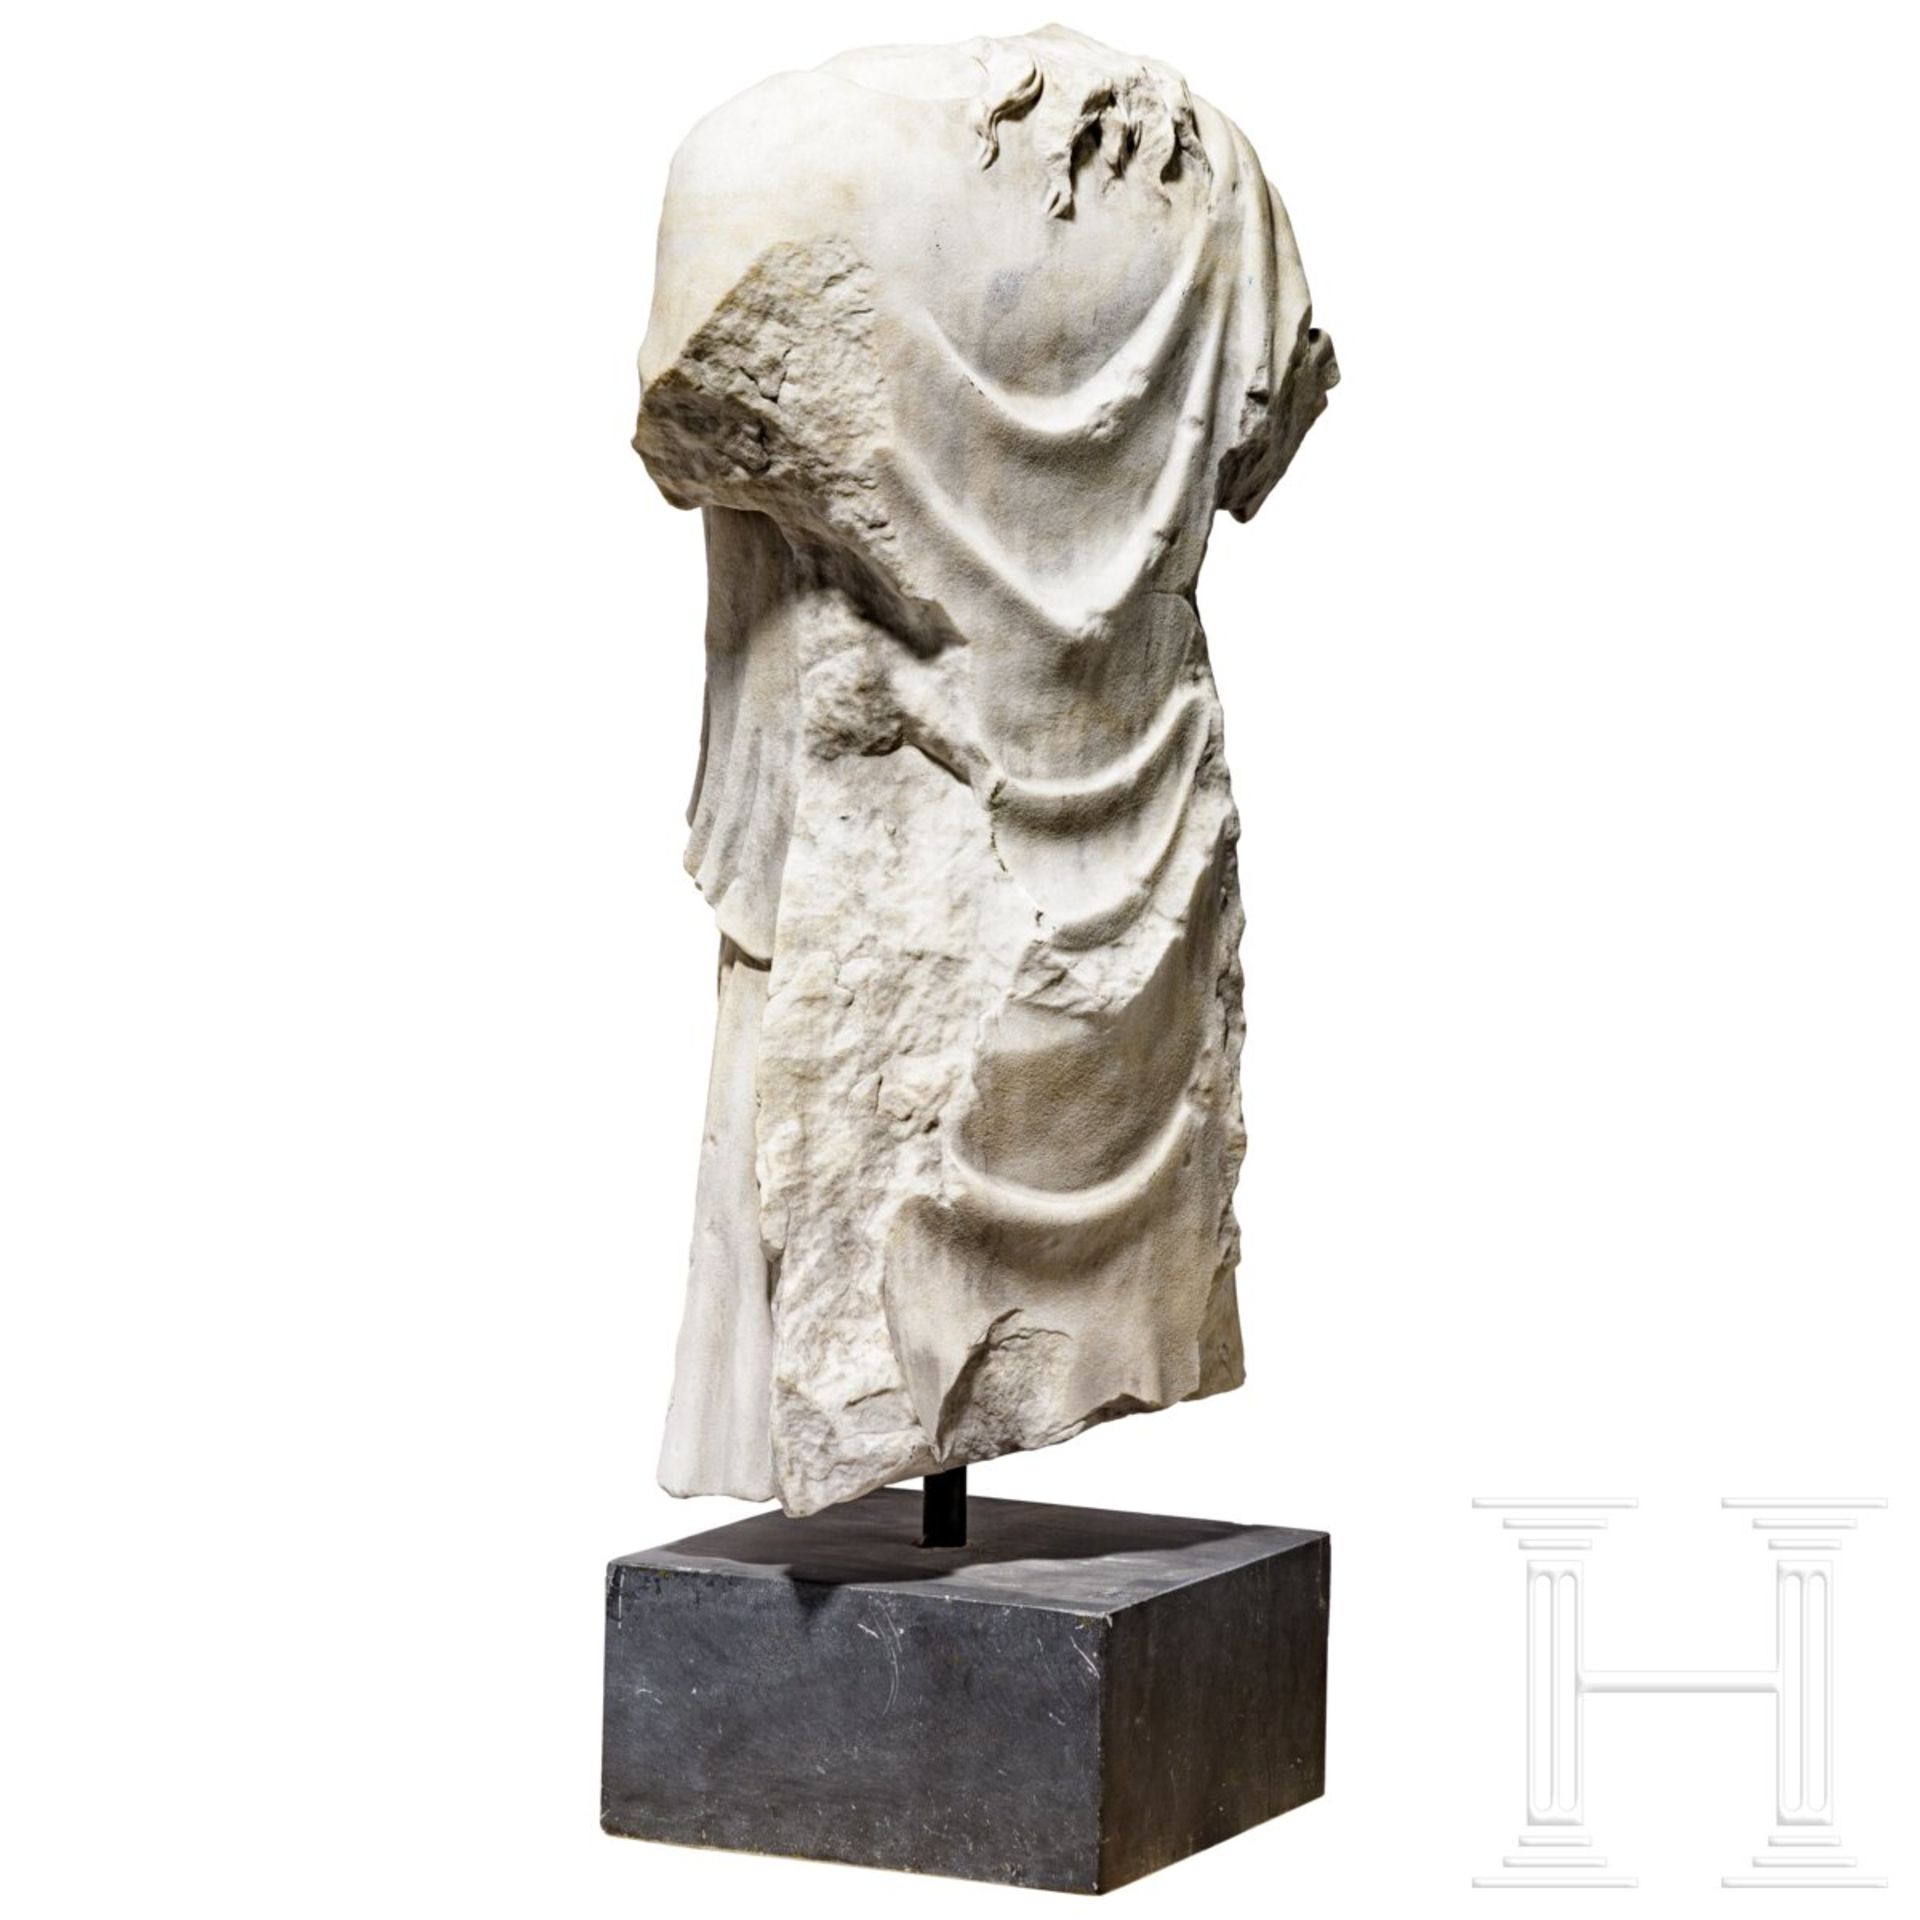 Klassizistischer Marmortorso nach dem Vorbild einer antiken Artemis-Statue, um 1800 - frühes 19. Jhd - Image 4 of 7